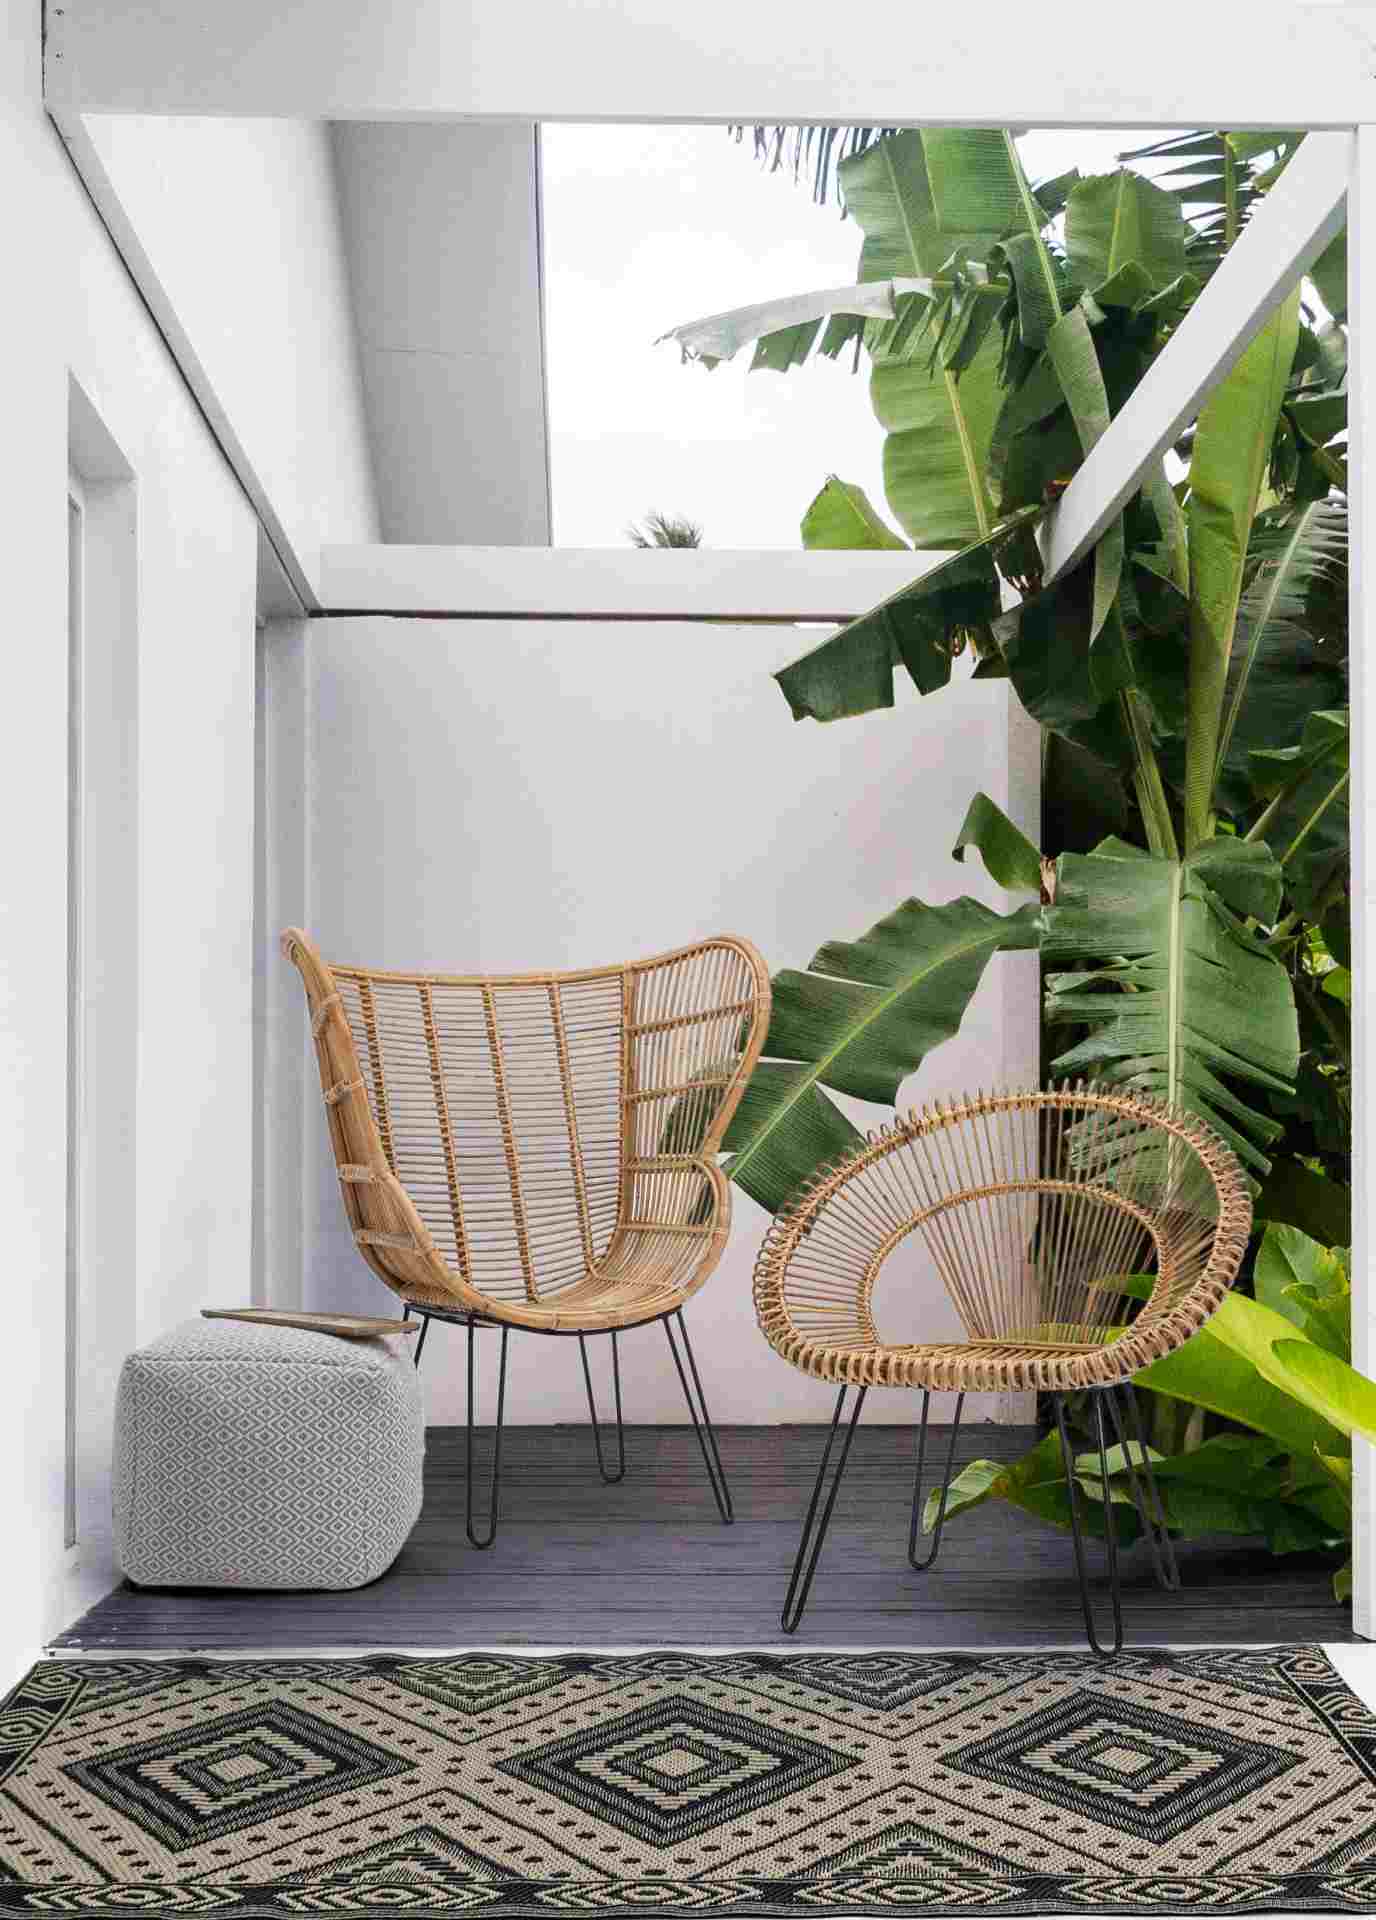 Der Sessel Esteban überzeugt mit seinem klassischen Design. Gefertigt wurde er aus Rattan, welches einen natürlichen Farbton besitzt. Das Gestell ist aus Metall und hat eine schwarze Farbe. Der Sessel besitzt eine Sitzhöhe von 45 cm. Die Breite beträgt 83